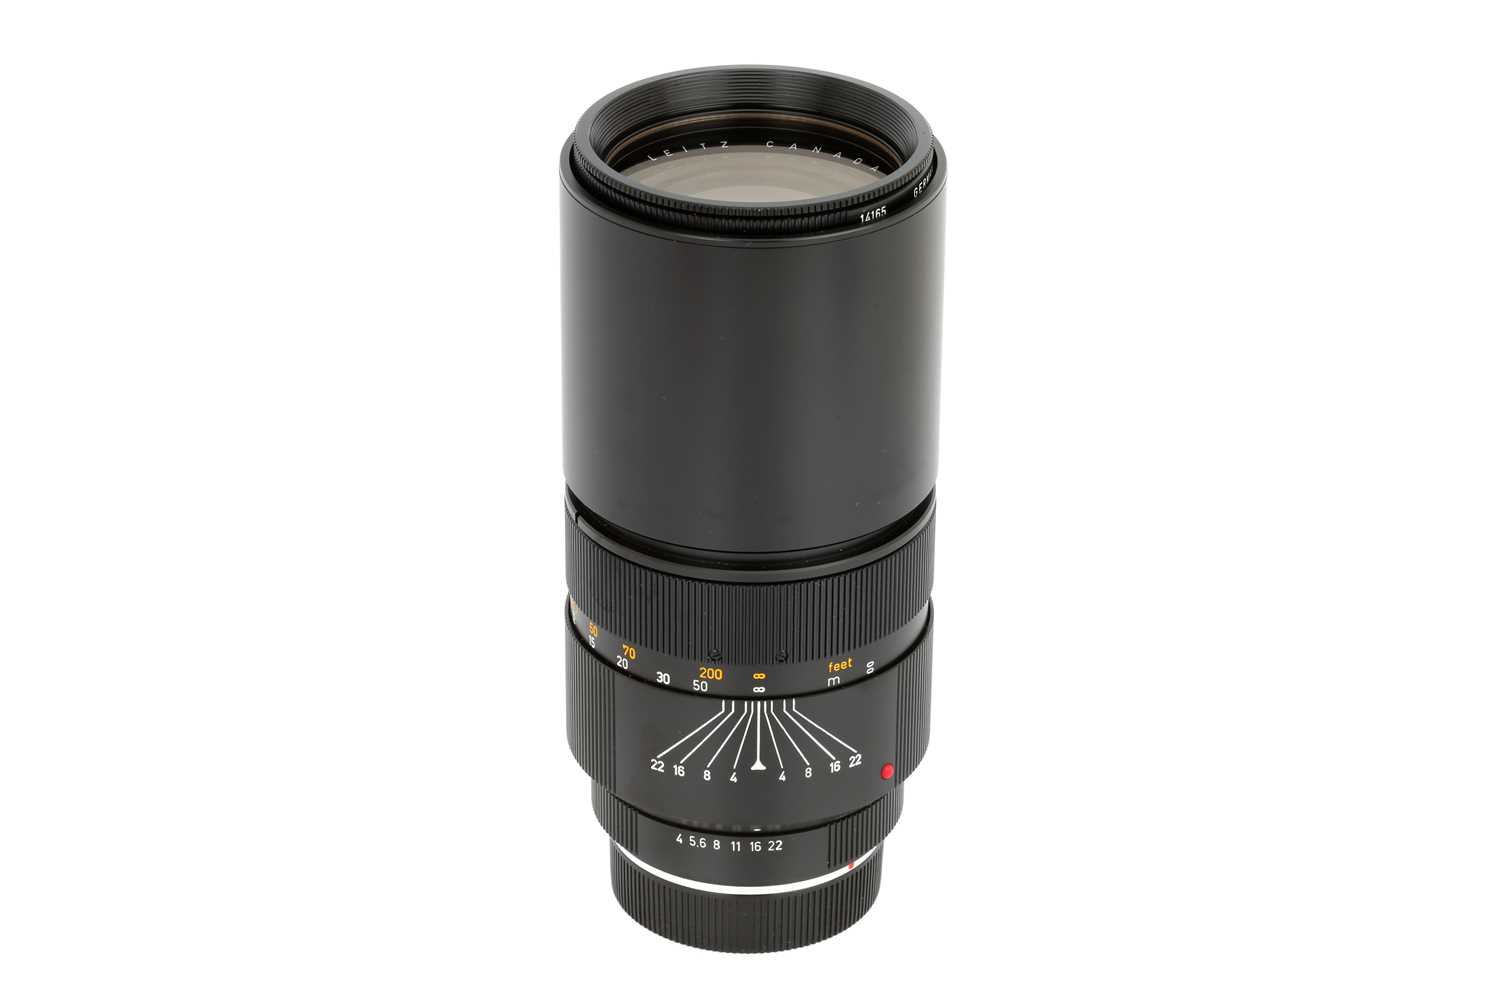 Lot 89 - A Leitz Telyt-R f/4 250mm Lens